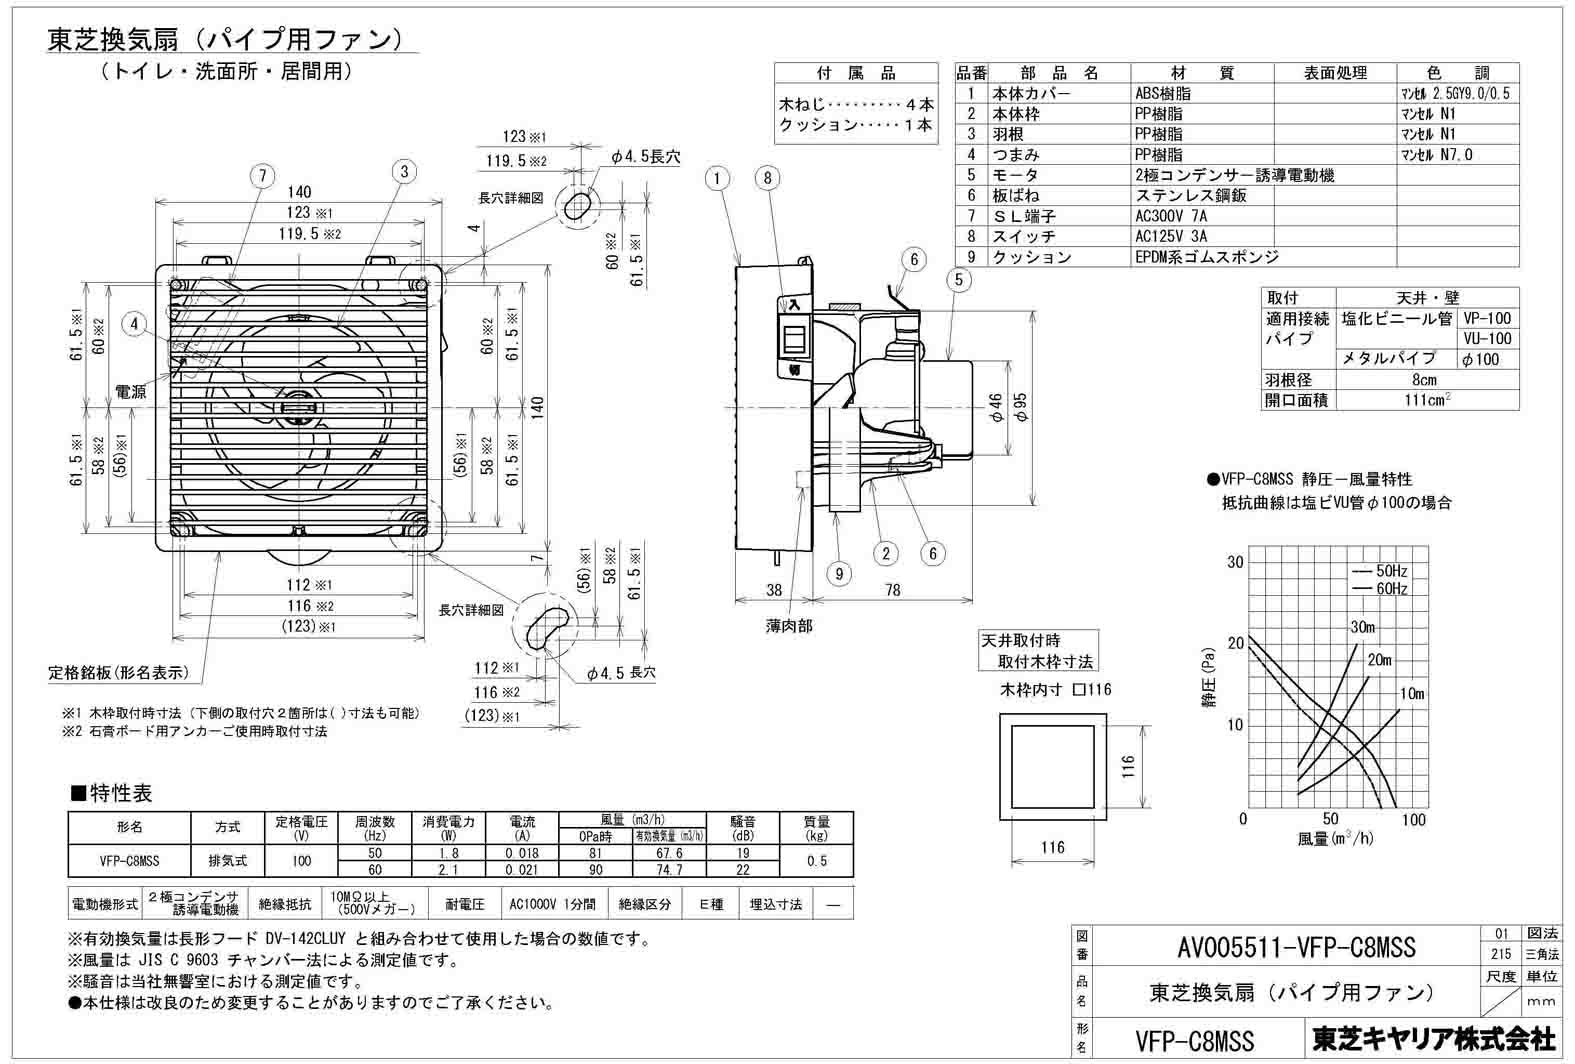 東芝 TOSHIBA 圧力形パイプ用ファン VFP-12XASD4 - 1